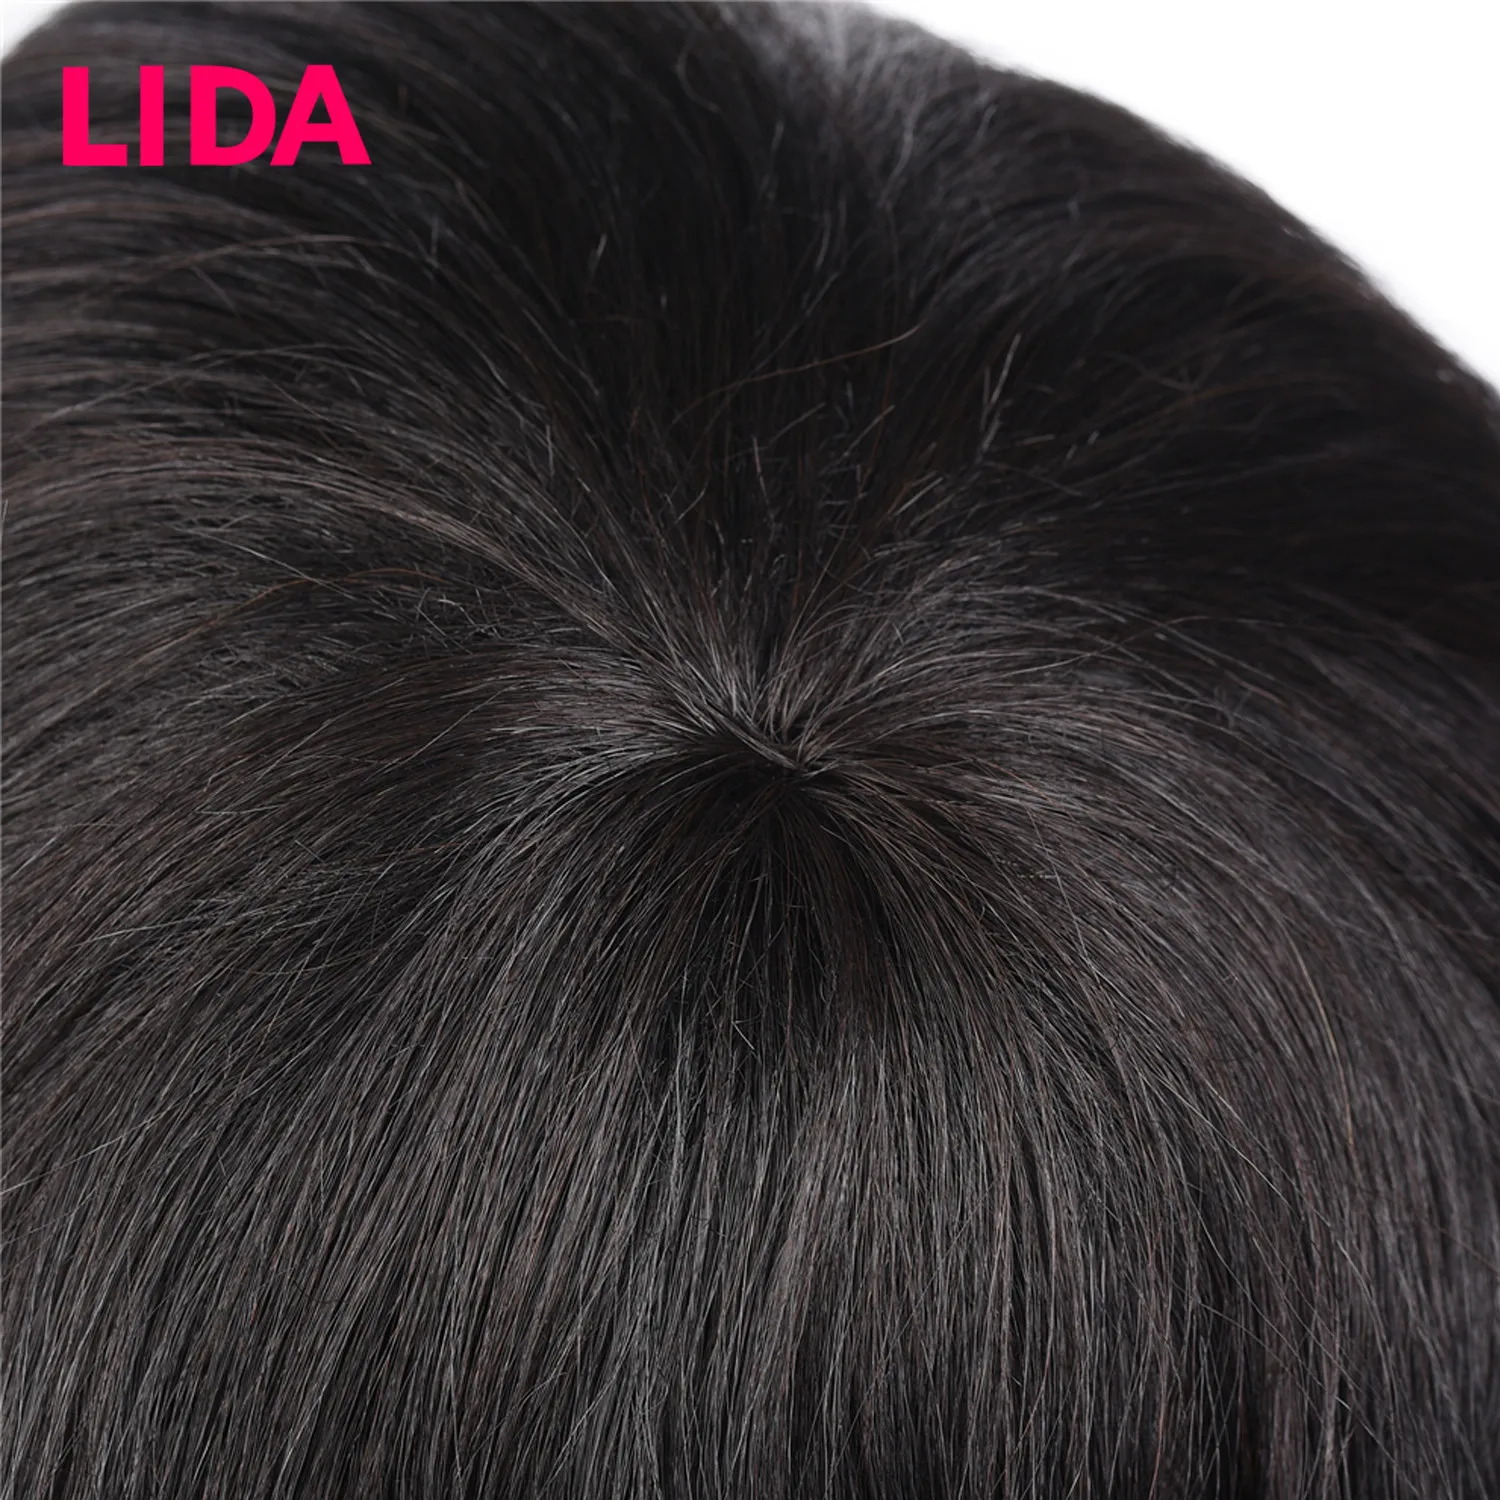 LIDA малазийские человеческие волосы парики 150% высокой плотности средней длины 12 дюймов вьющиеся человеческие волосы парики не Реми